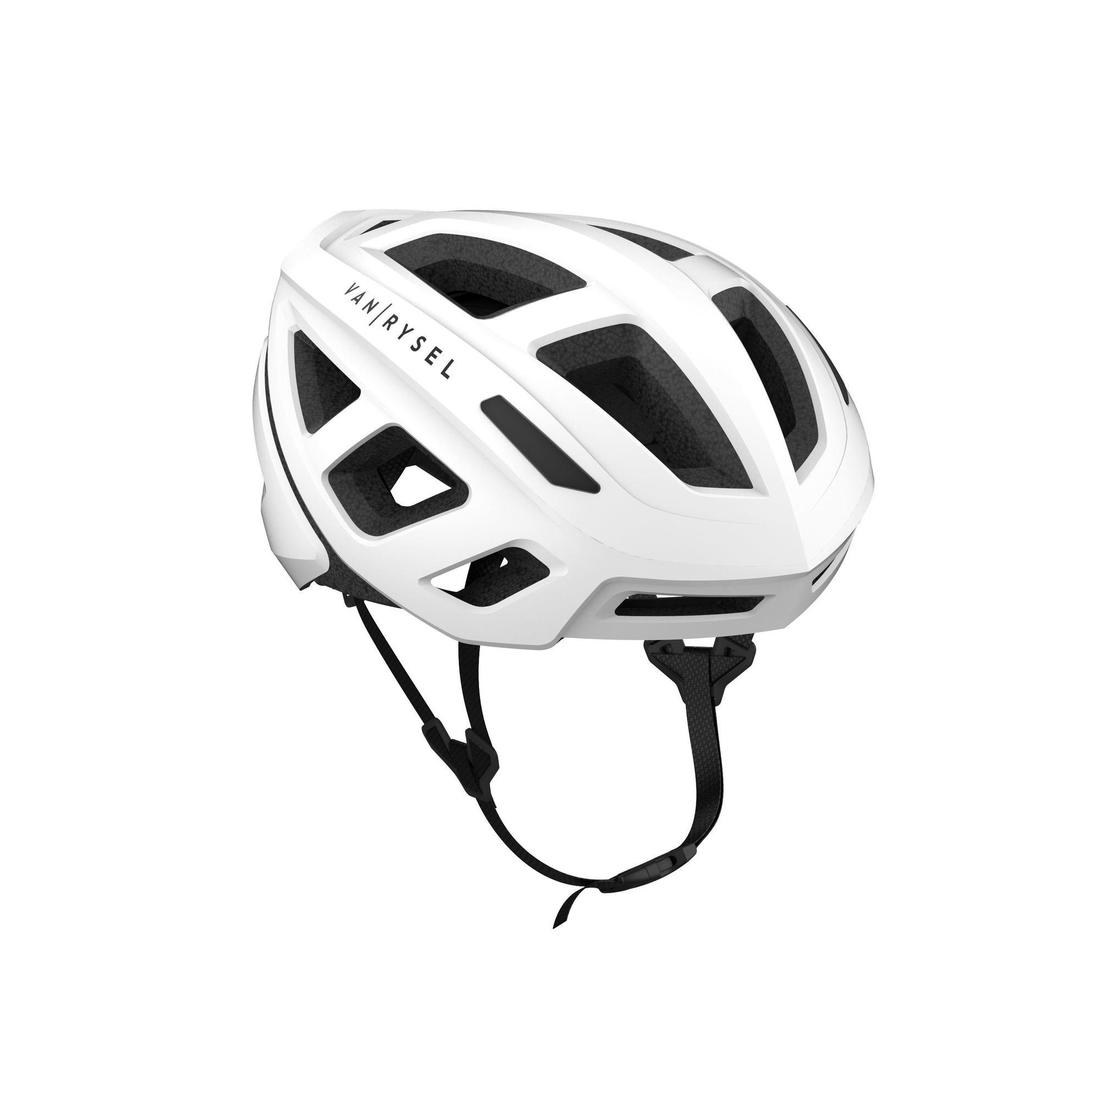 登場大人気アイテム ランキングや新製品 -自転車アクセサリー- VAN RYSEL ヴァンリーゼル ROADR サイクリングヘルメット 500 スノーホワイト L 2392714-8500016